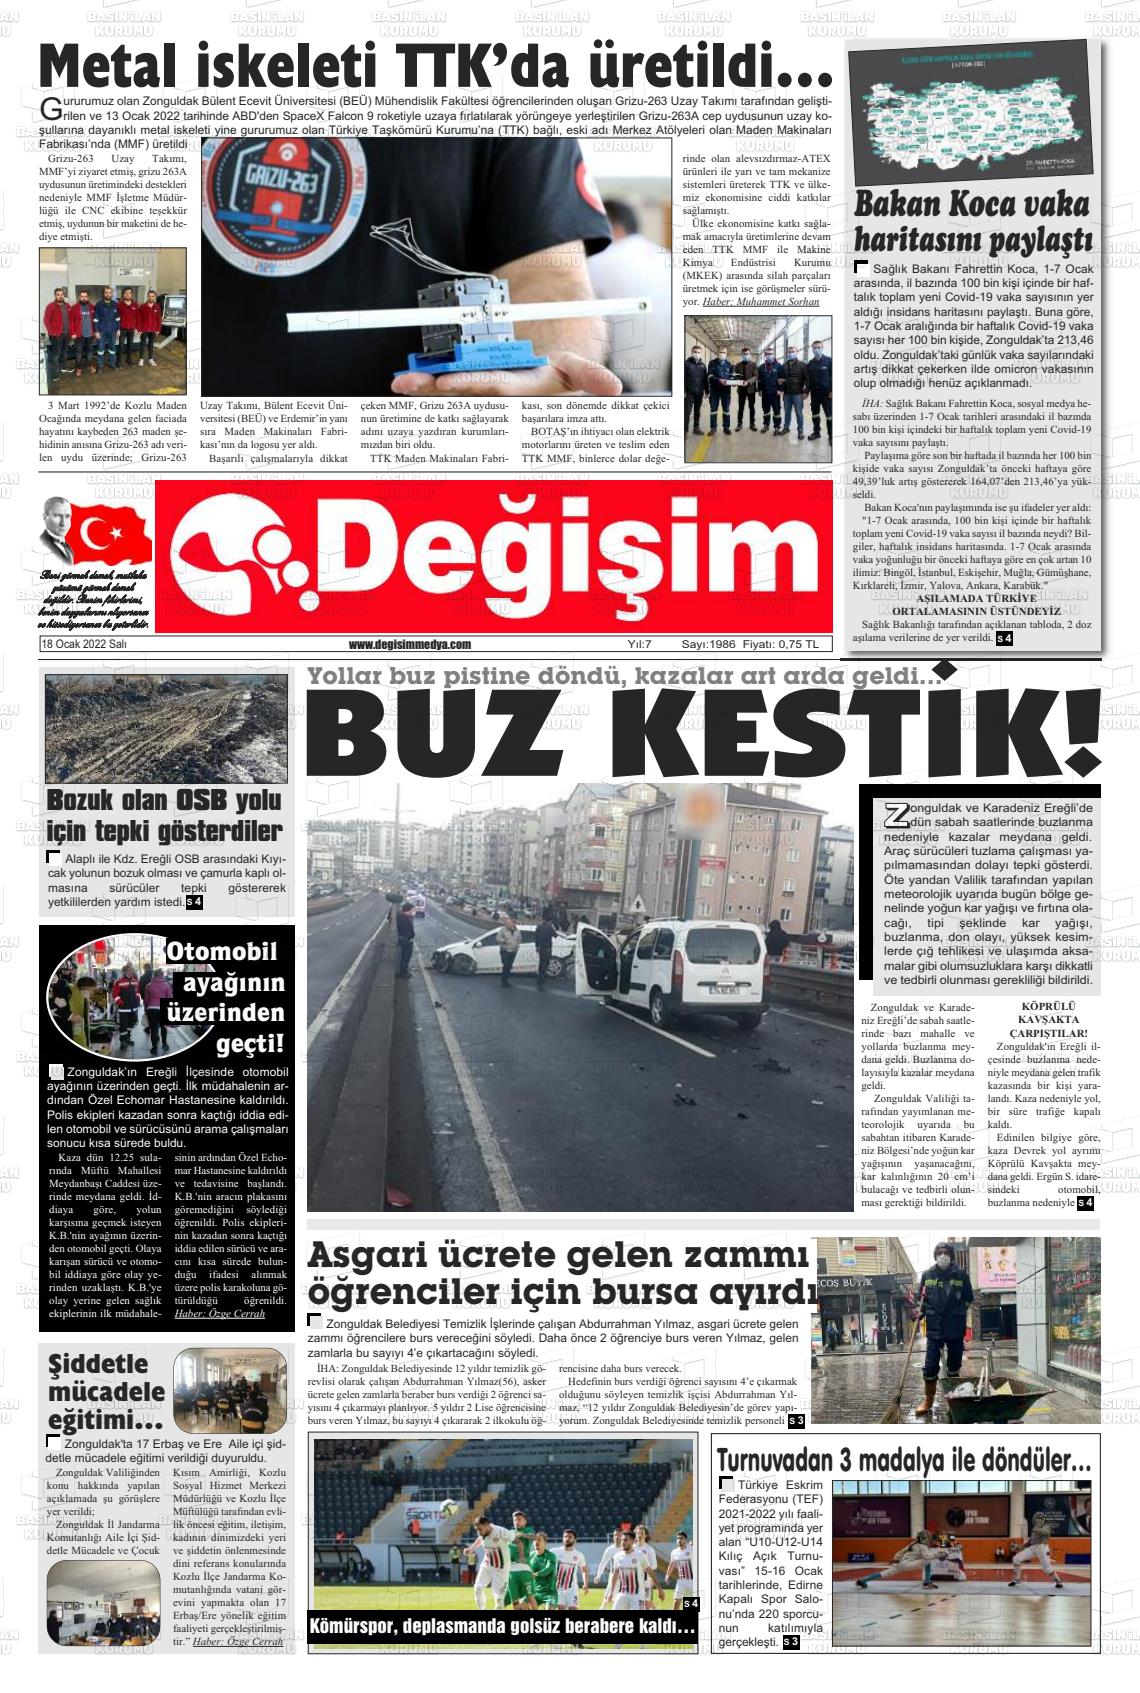 18 Ocak 2022 Değişim Gazete Manşeti